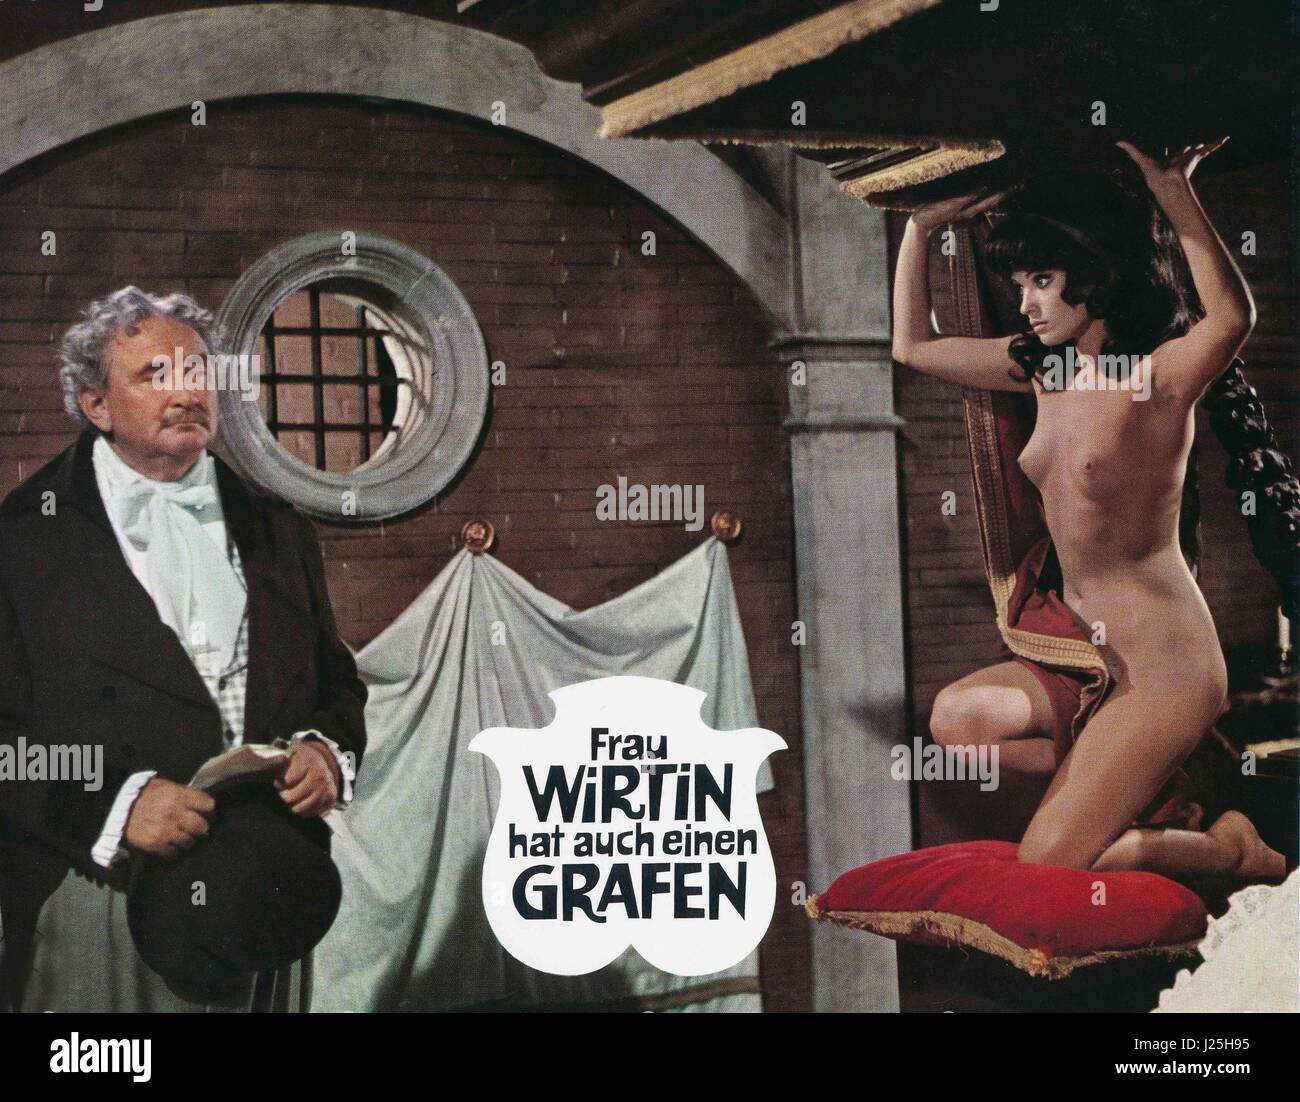 Frau Wirtin hat auch einen Grafen, Österreich/Frankreich/Deutschland 1968, Regie: Franz Antel, Darsteller: Gustav Knuth, Pascale Petit Foto Stock